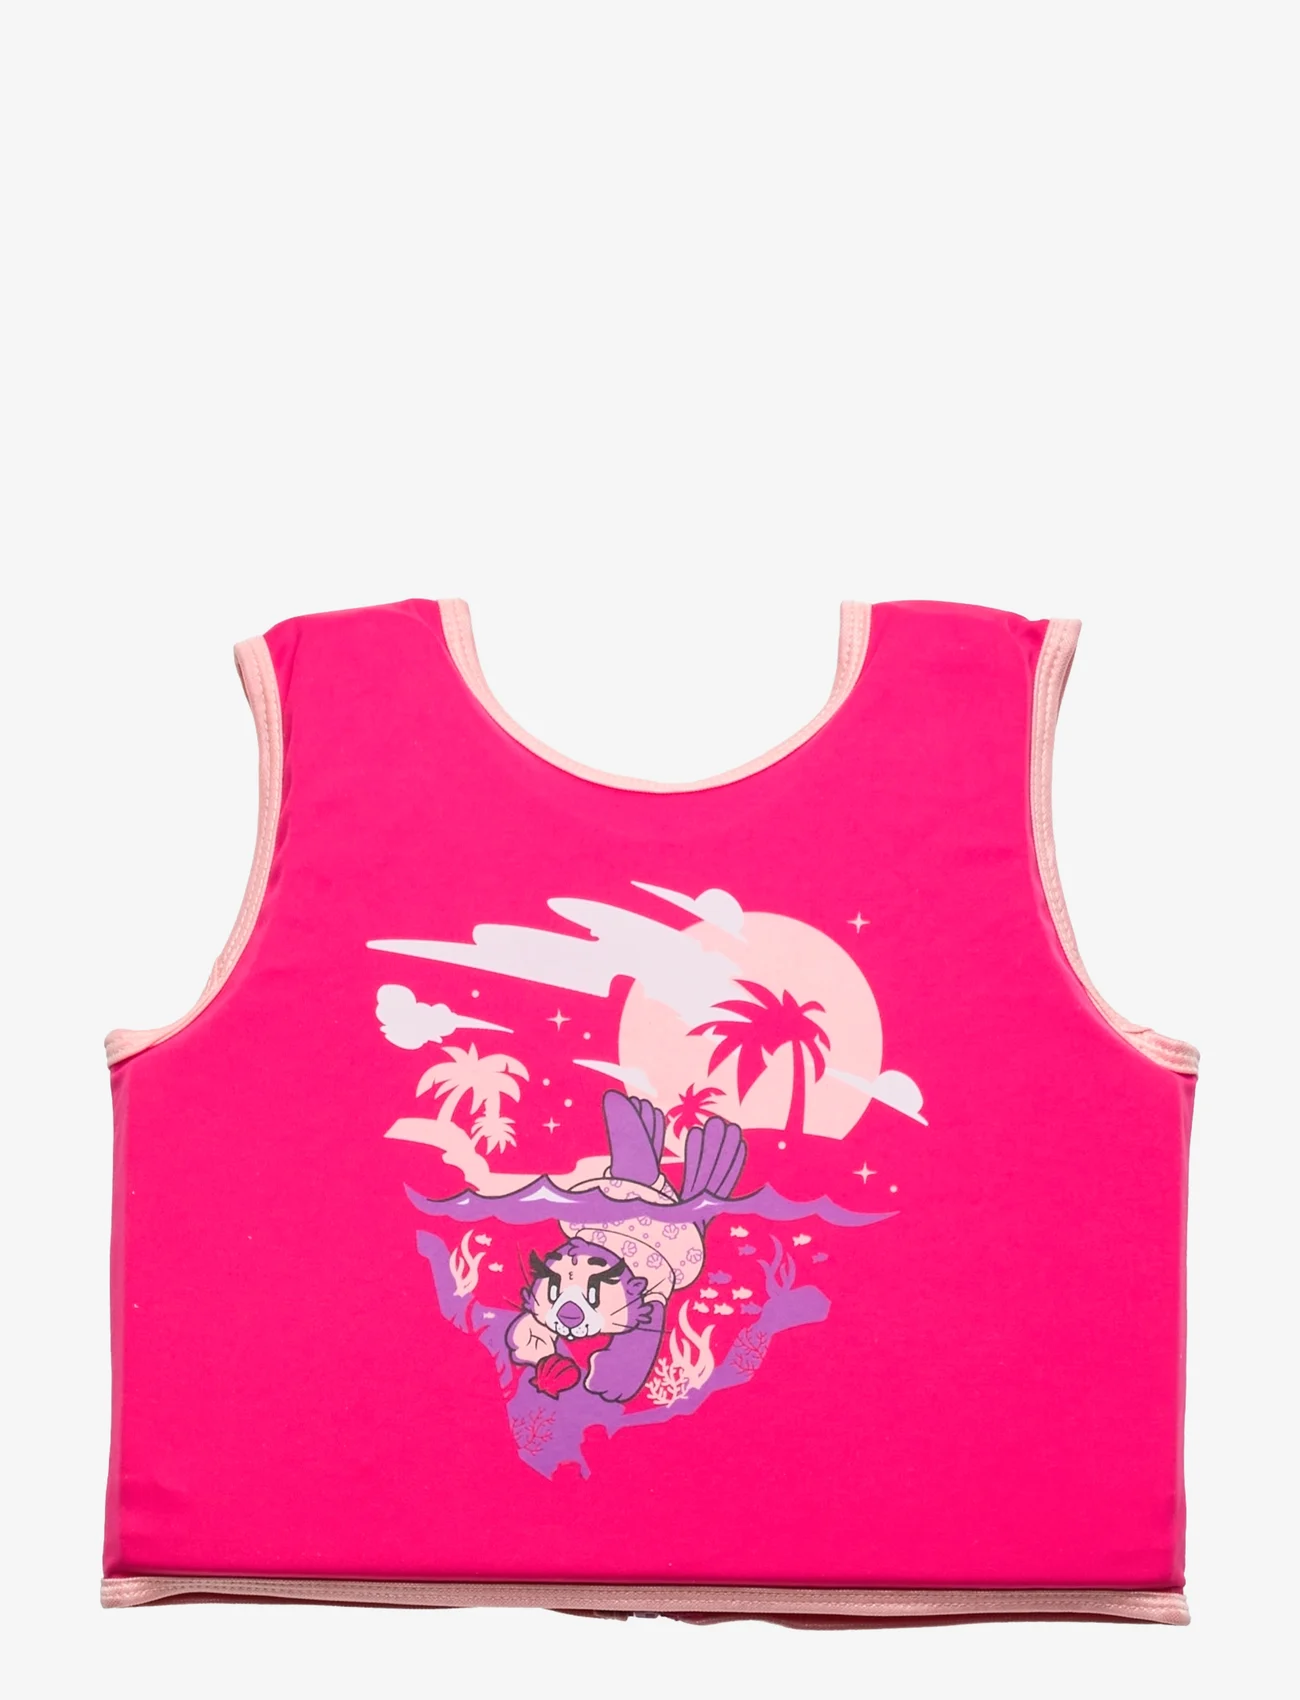 Speedo - Character Printed Float Vest - zwemaccessoires - pink/purple - 1